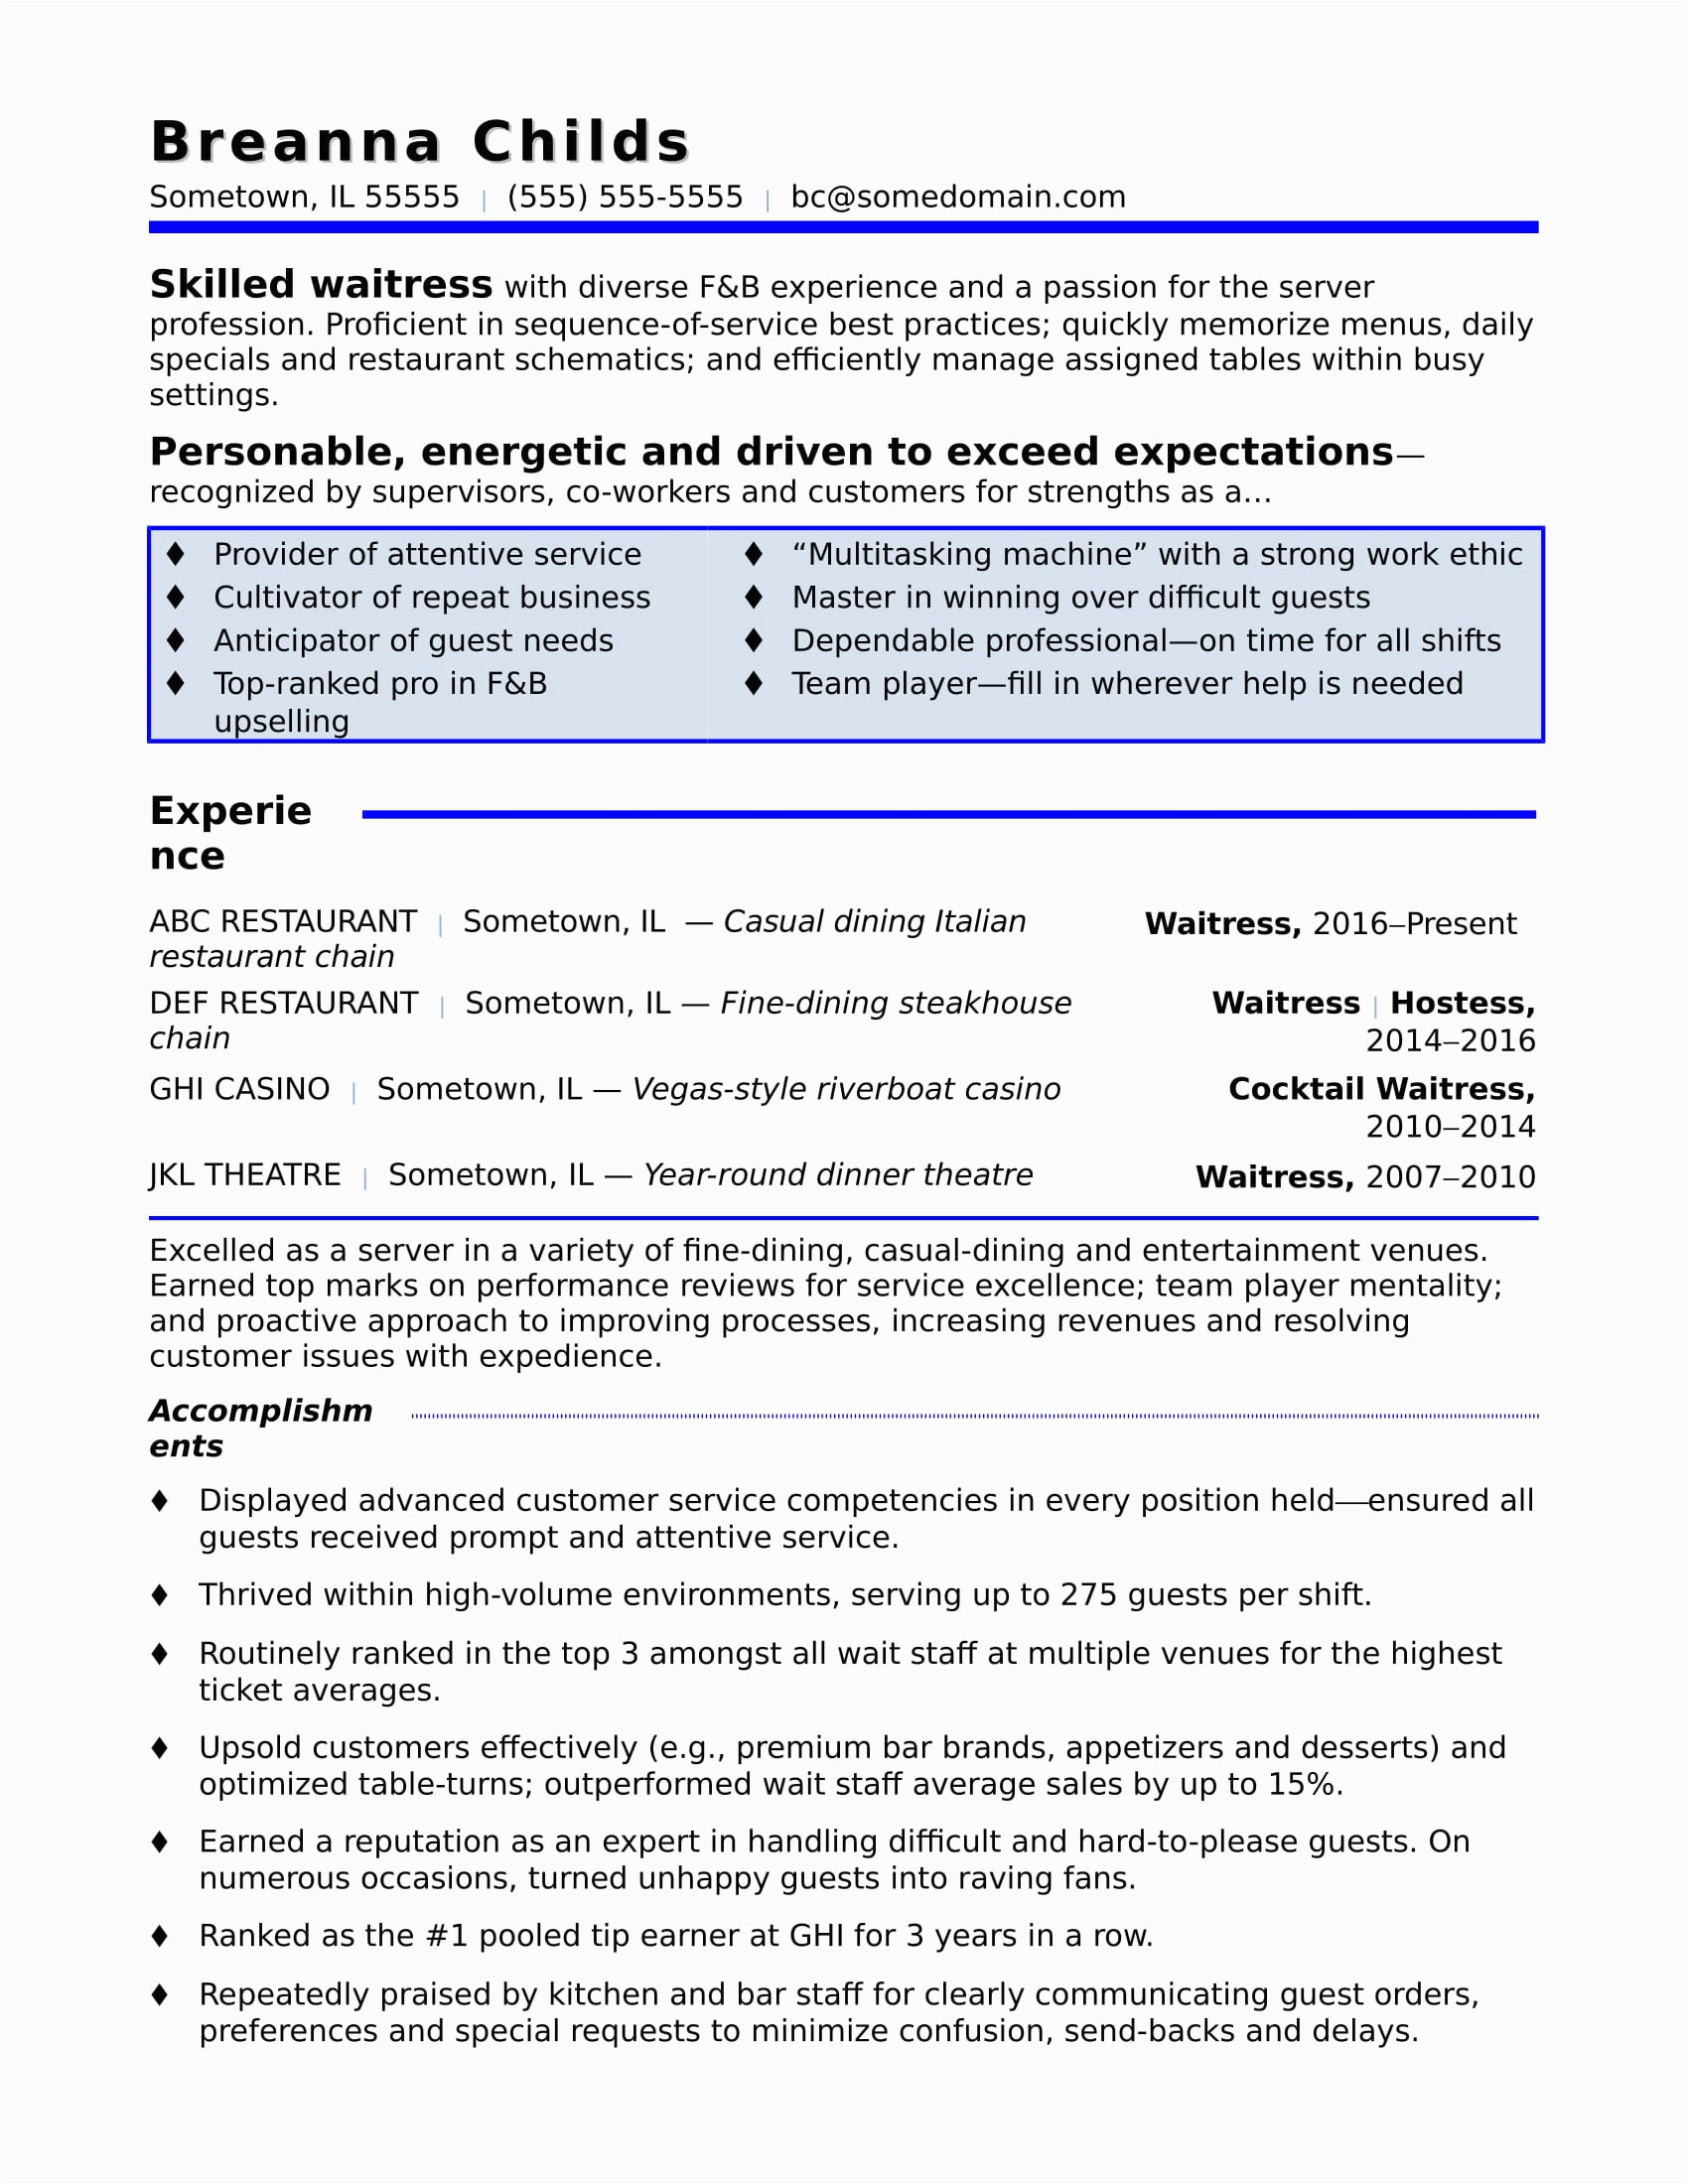 Free Sample Resume for Waitress Position Waitress Resume Sample